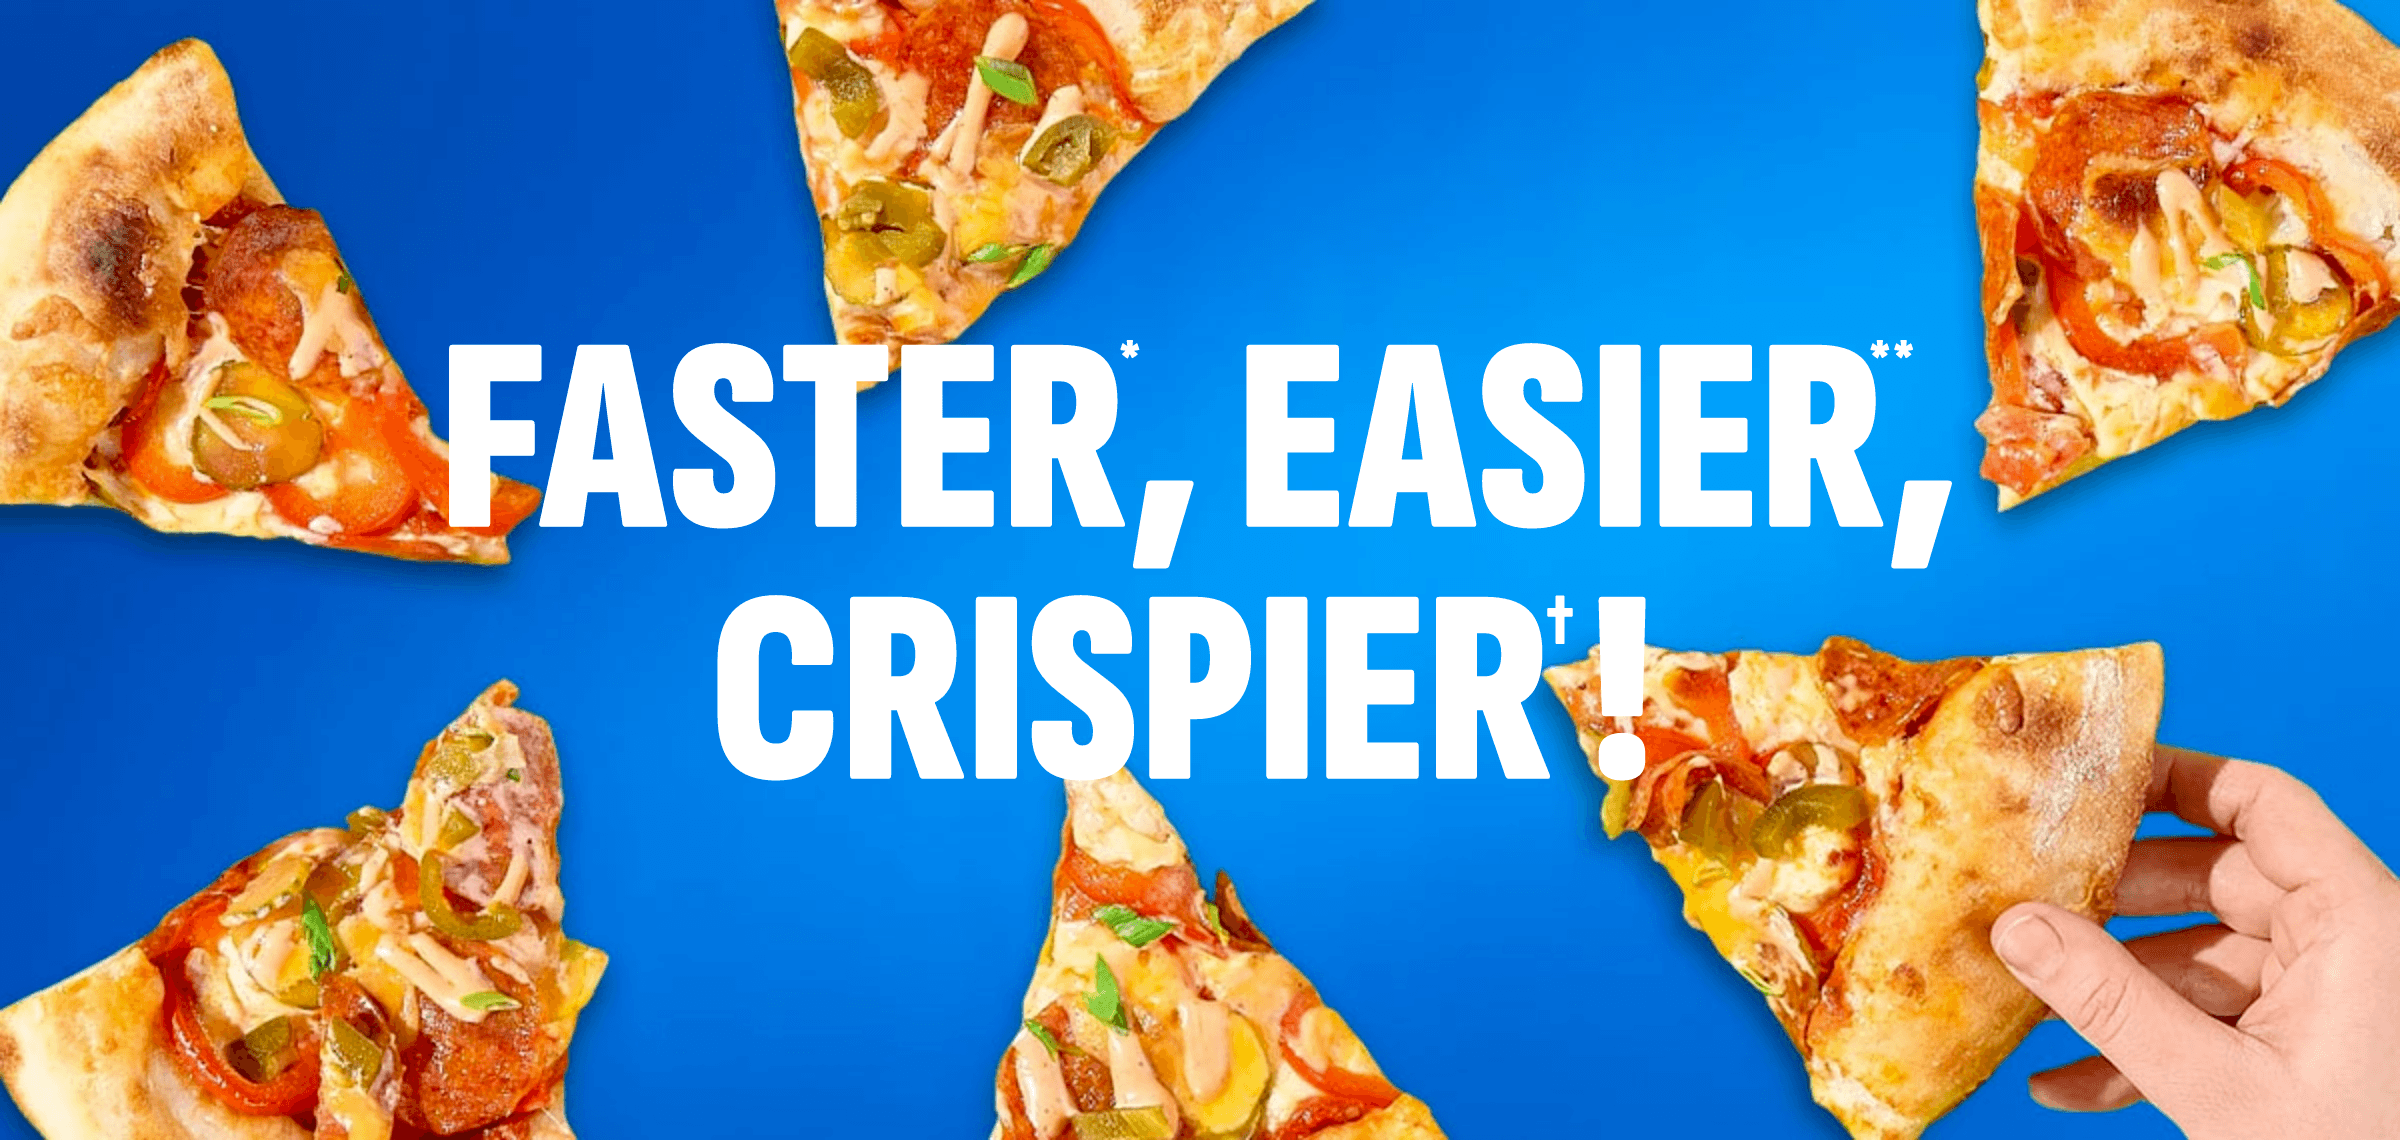 Faster, Easier, Crispier!